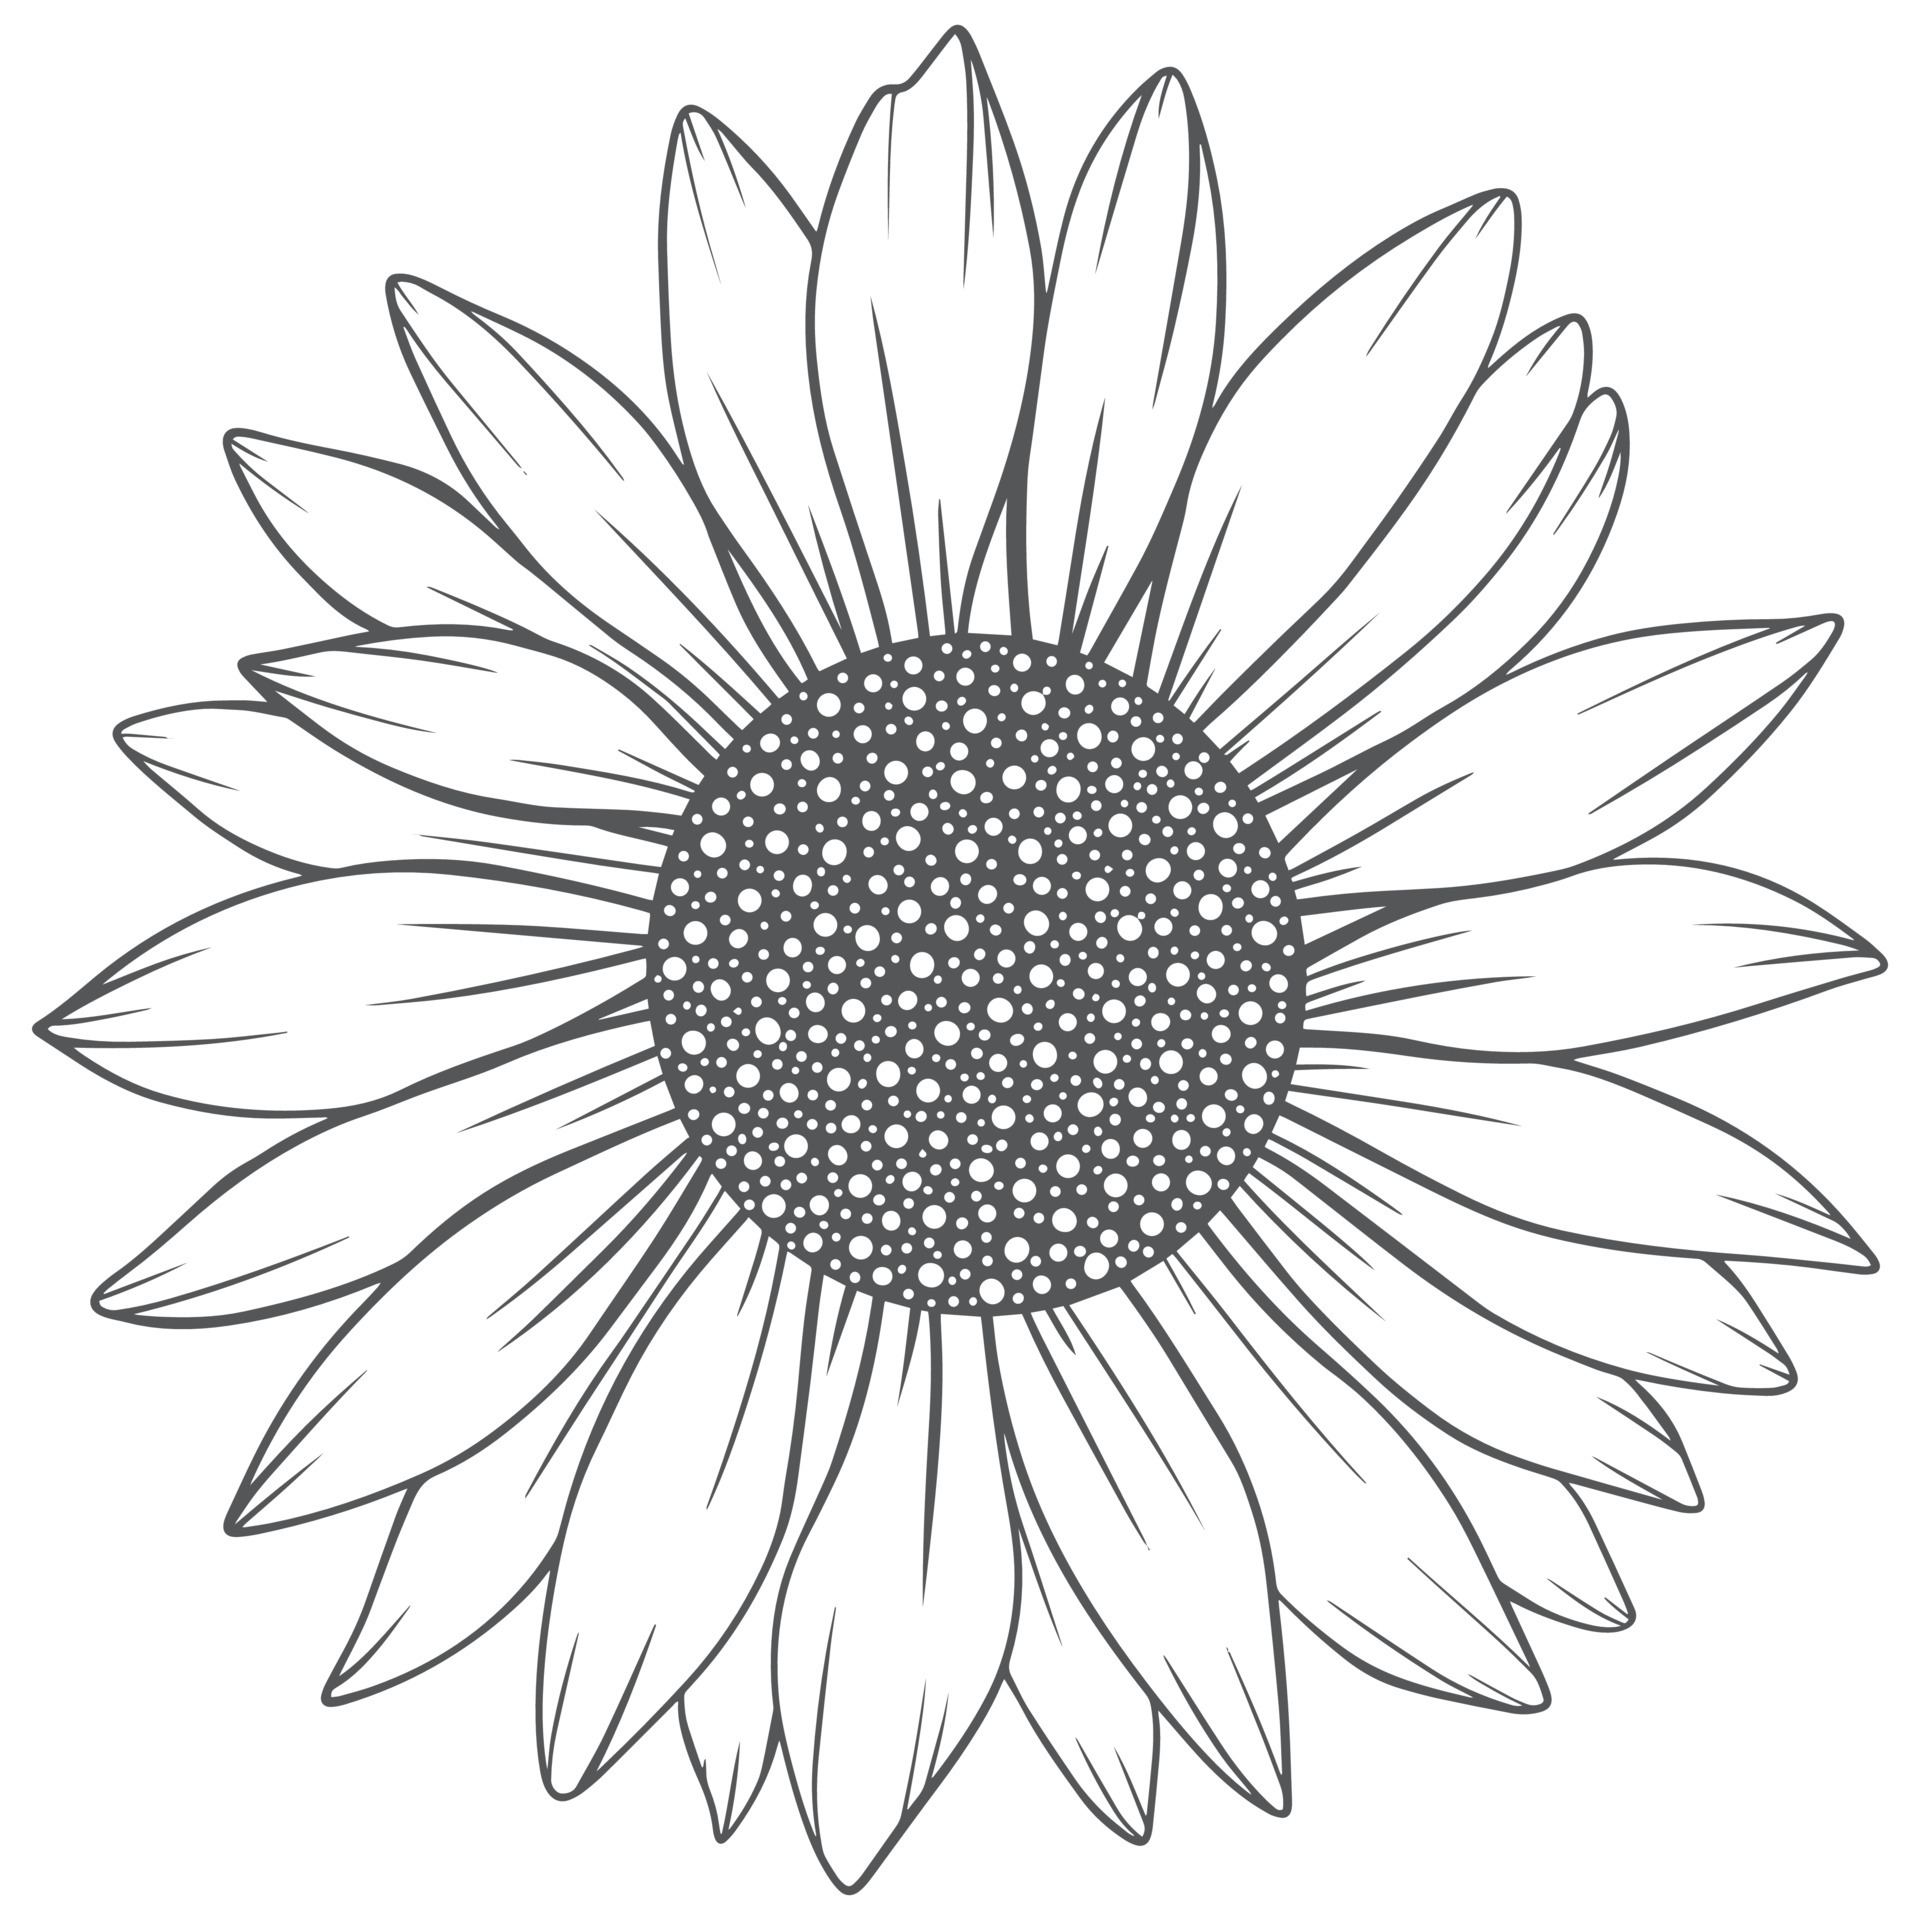 Sunflower outline 